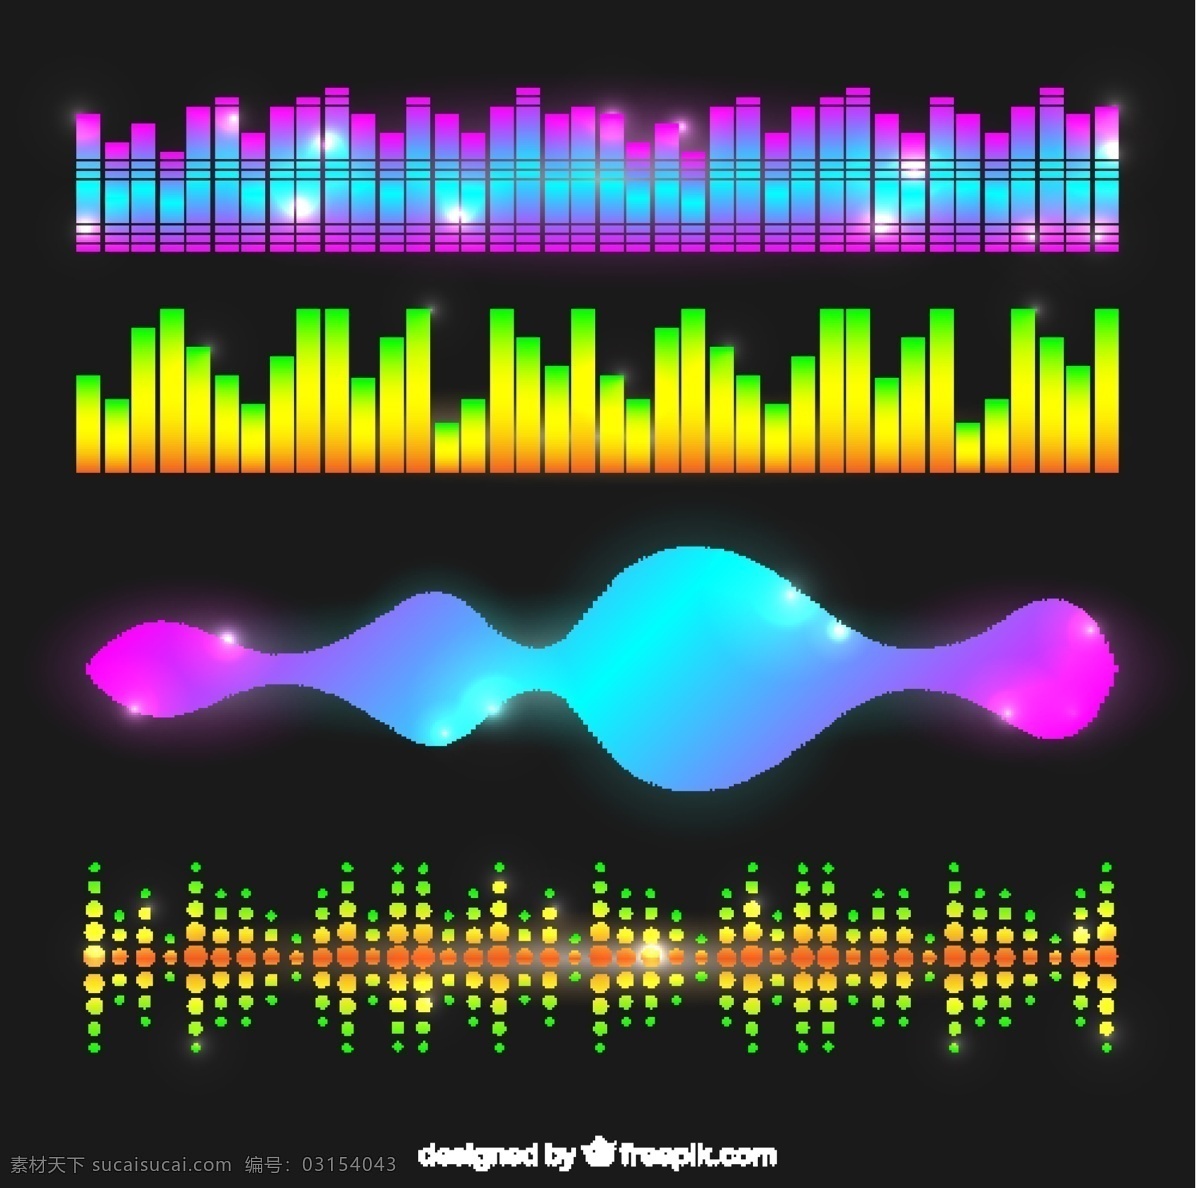 各种 闪亮 声波 音乐 技术 色彩 波浪 数字 声音 音频 明亮 录音 跟踪 均衡器 歌曲 音量 水平 频谱 彩色